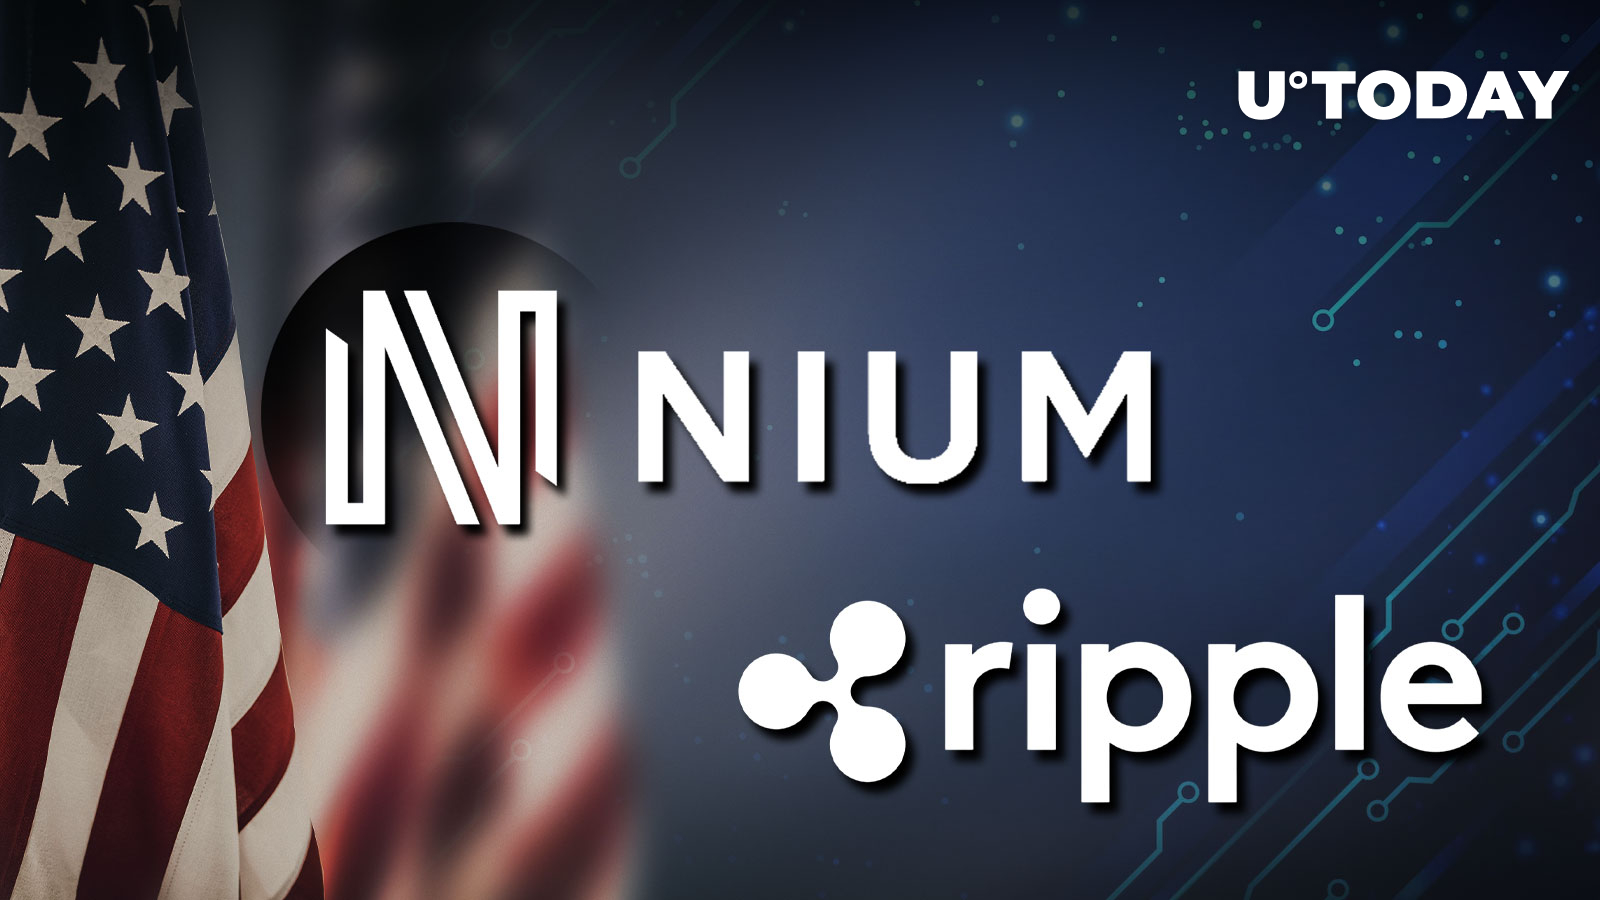  Billion Ripple Partner Nium to Go Public in US